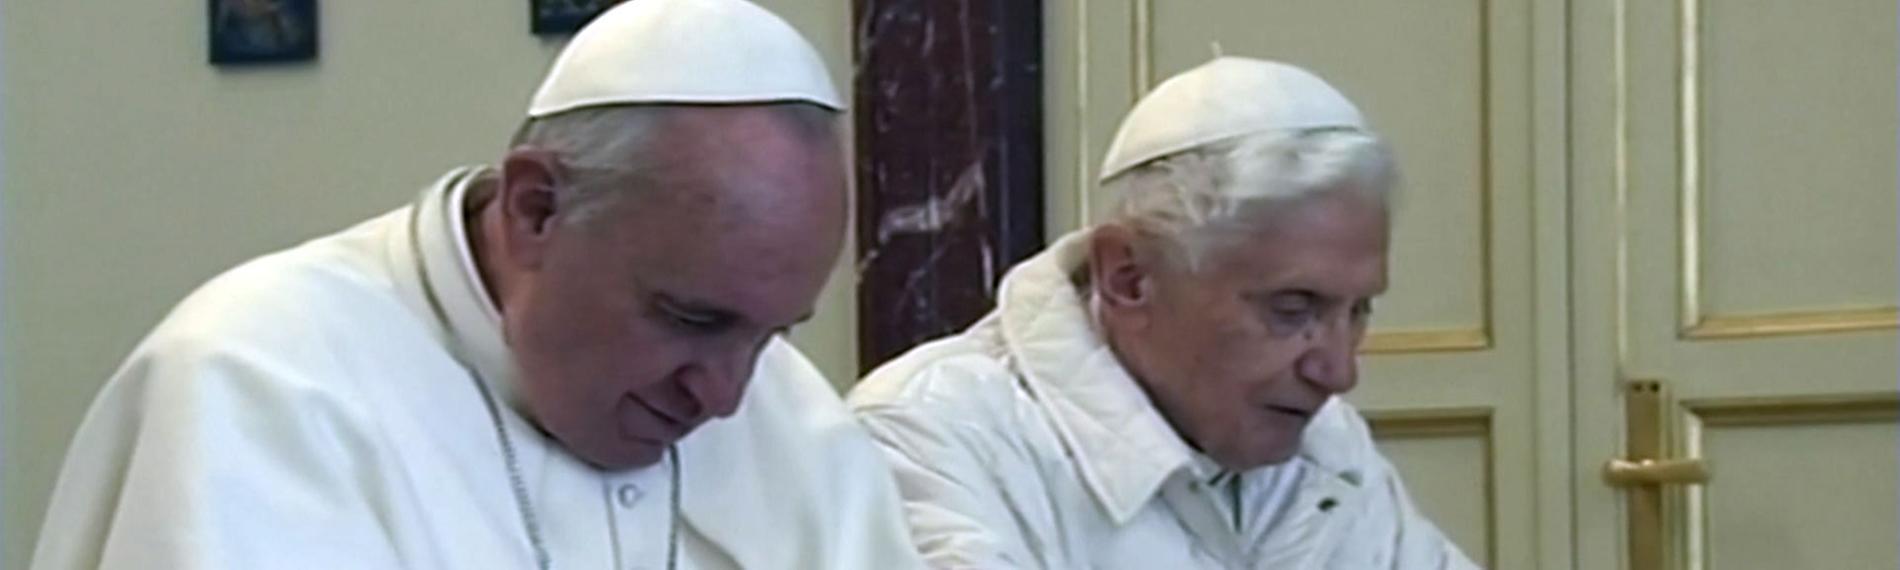 Papst Benedikt XVI. und Papst Franziskus kniend beim Gebet und haben beide weiße Gewänder an